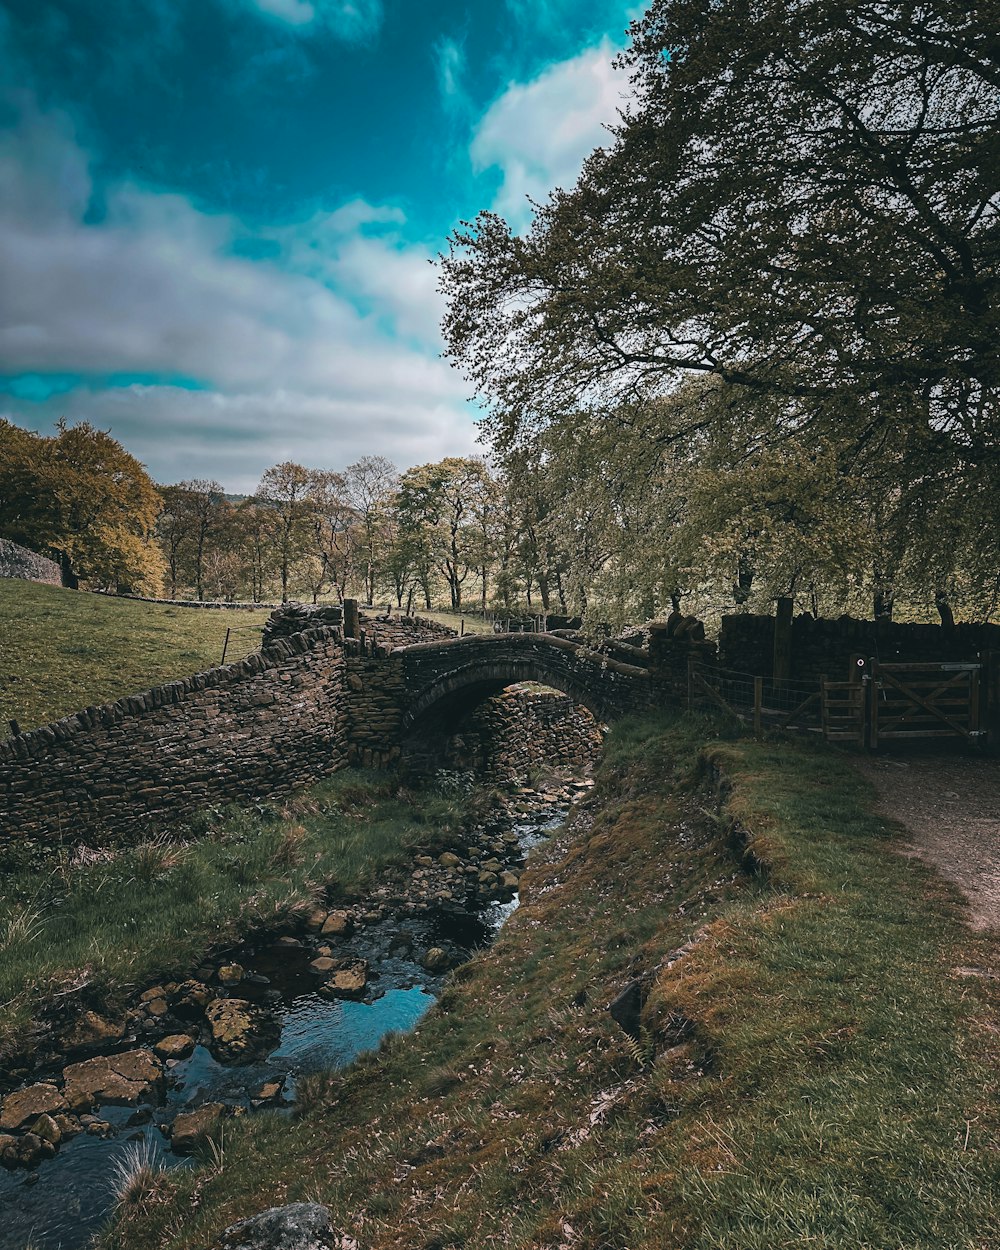 a small bridge over a small stream in a field